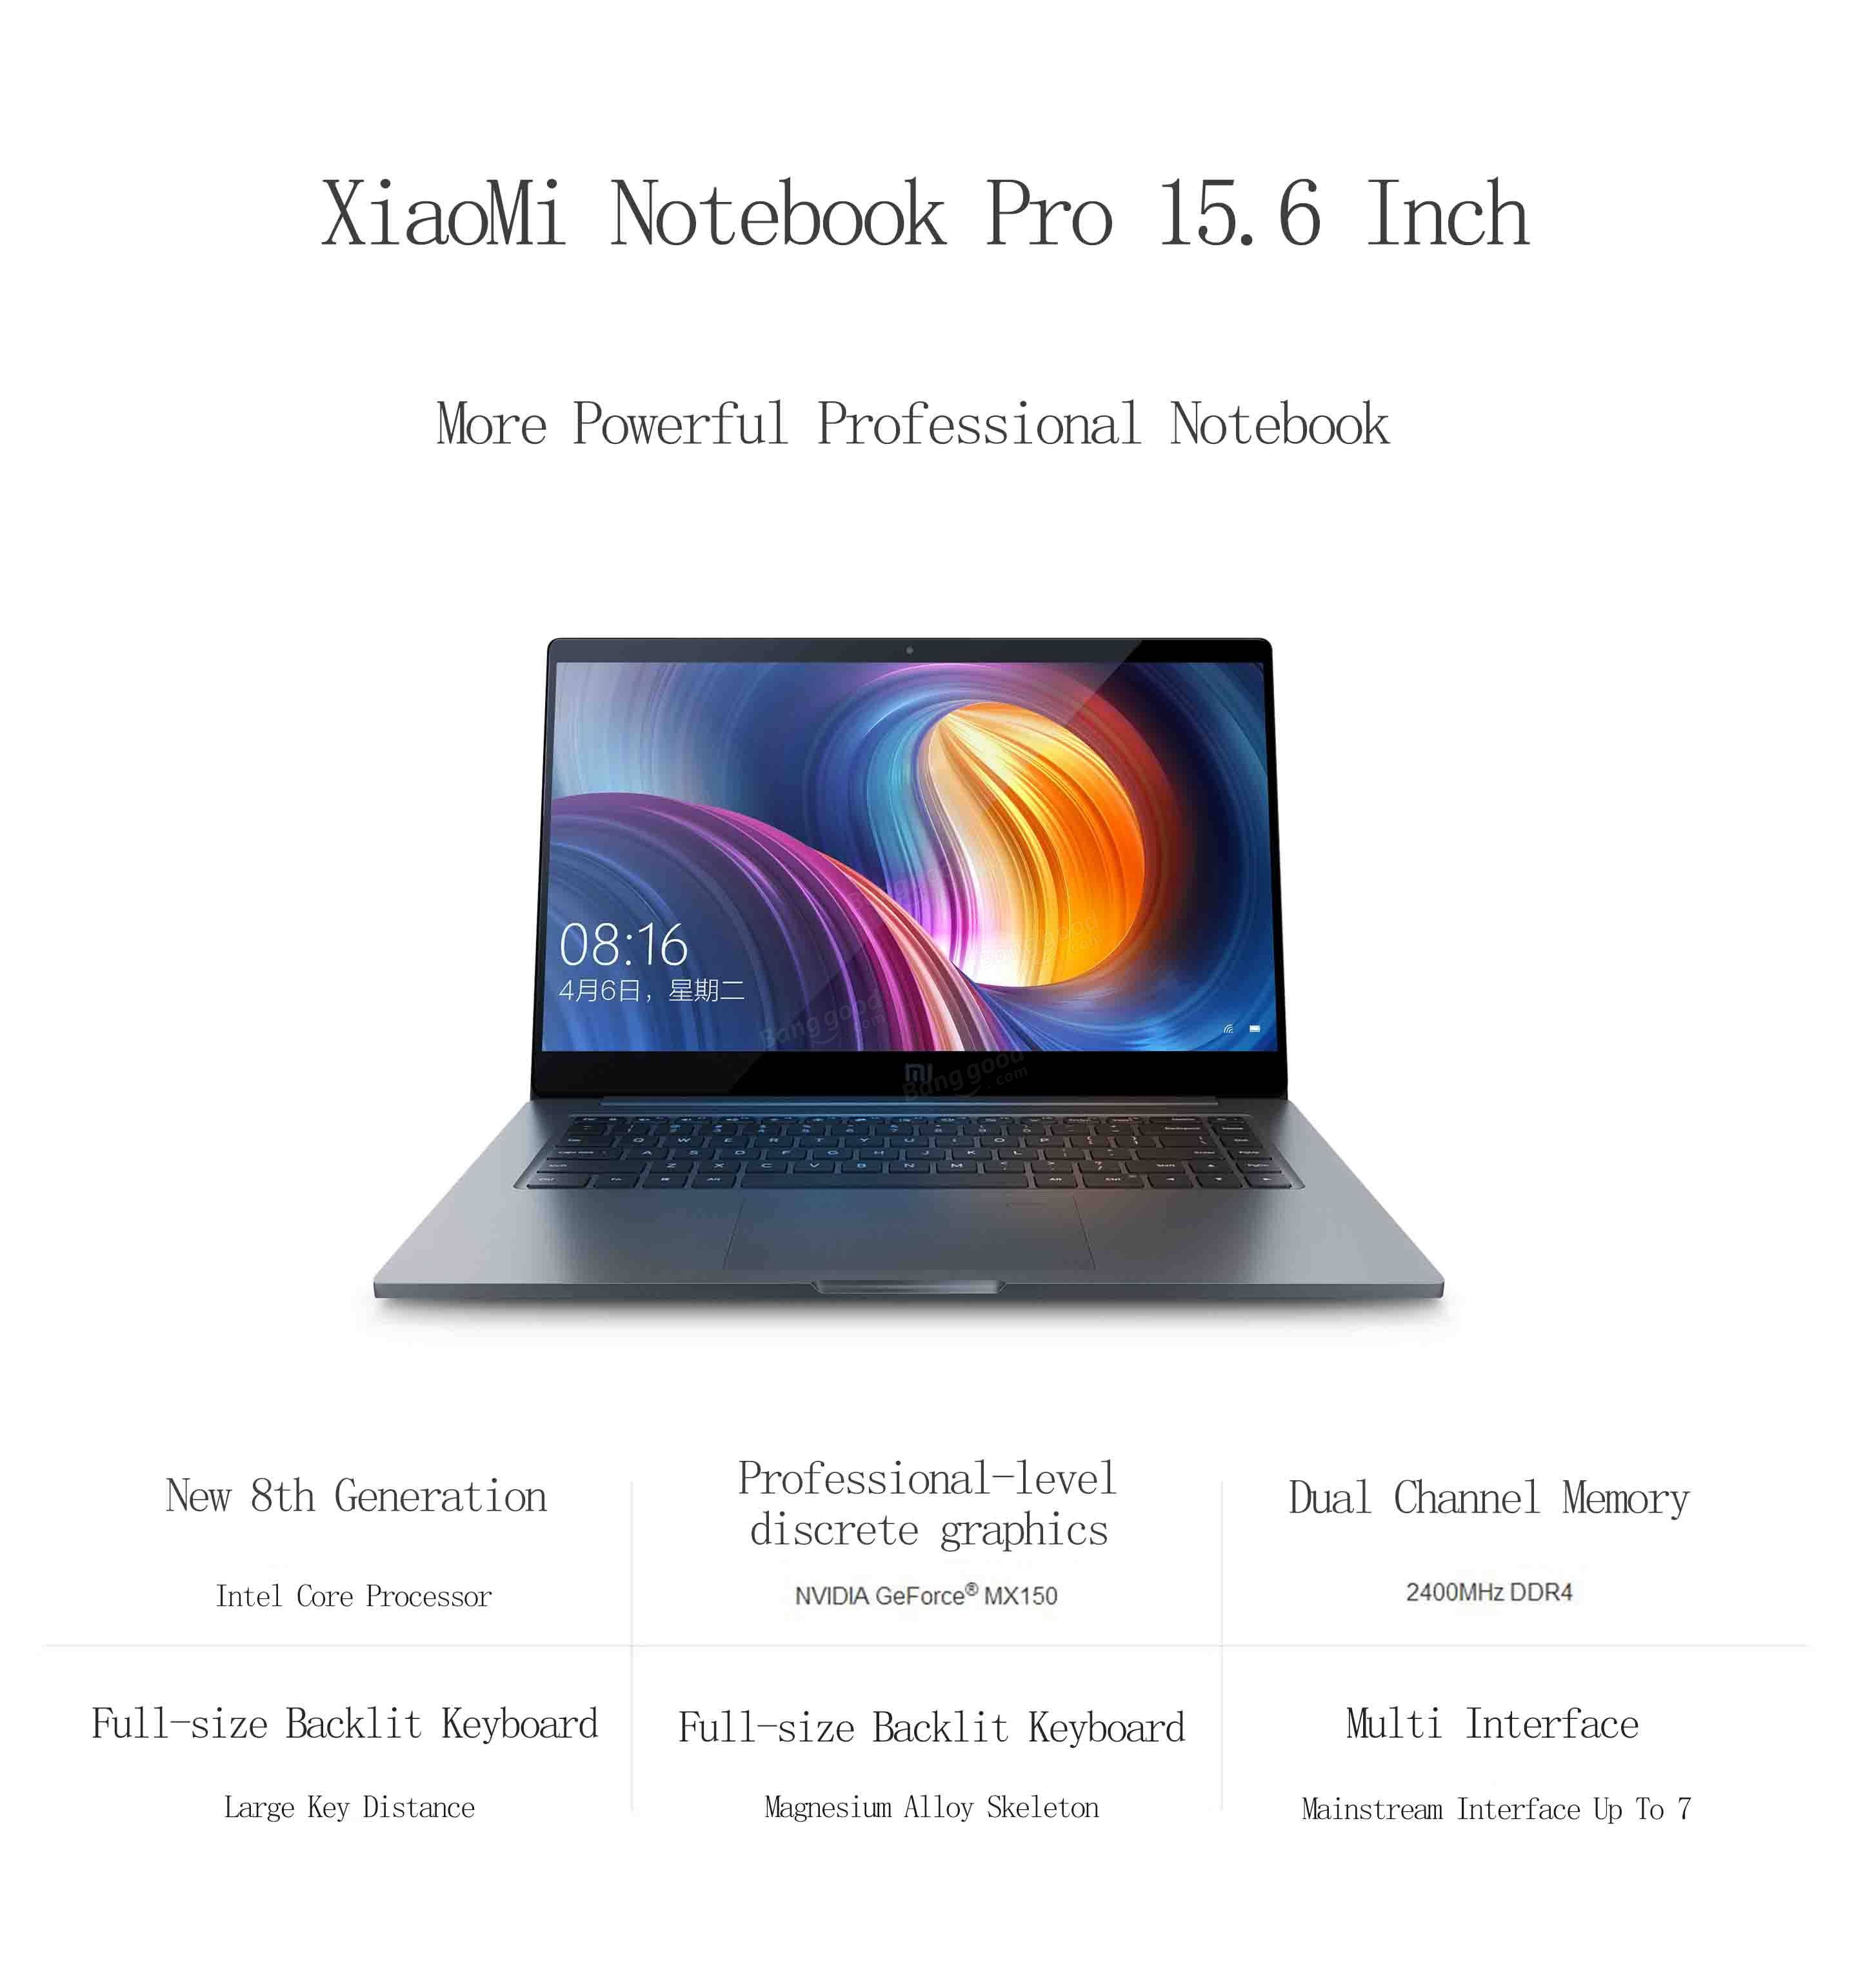 Xiaomi Notebook Pro Win10 15.6 Inch Intel Core i5-8250U Quad Core 8G/256GB Fingerprint Sensor Laptop